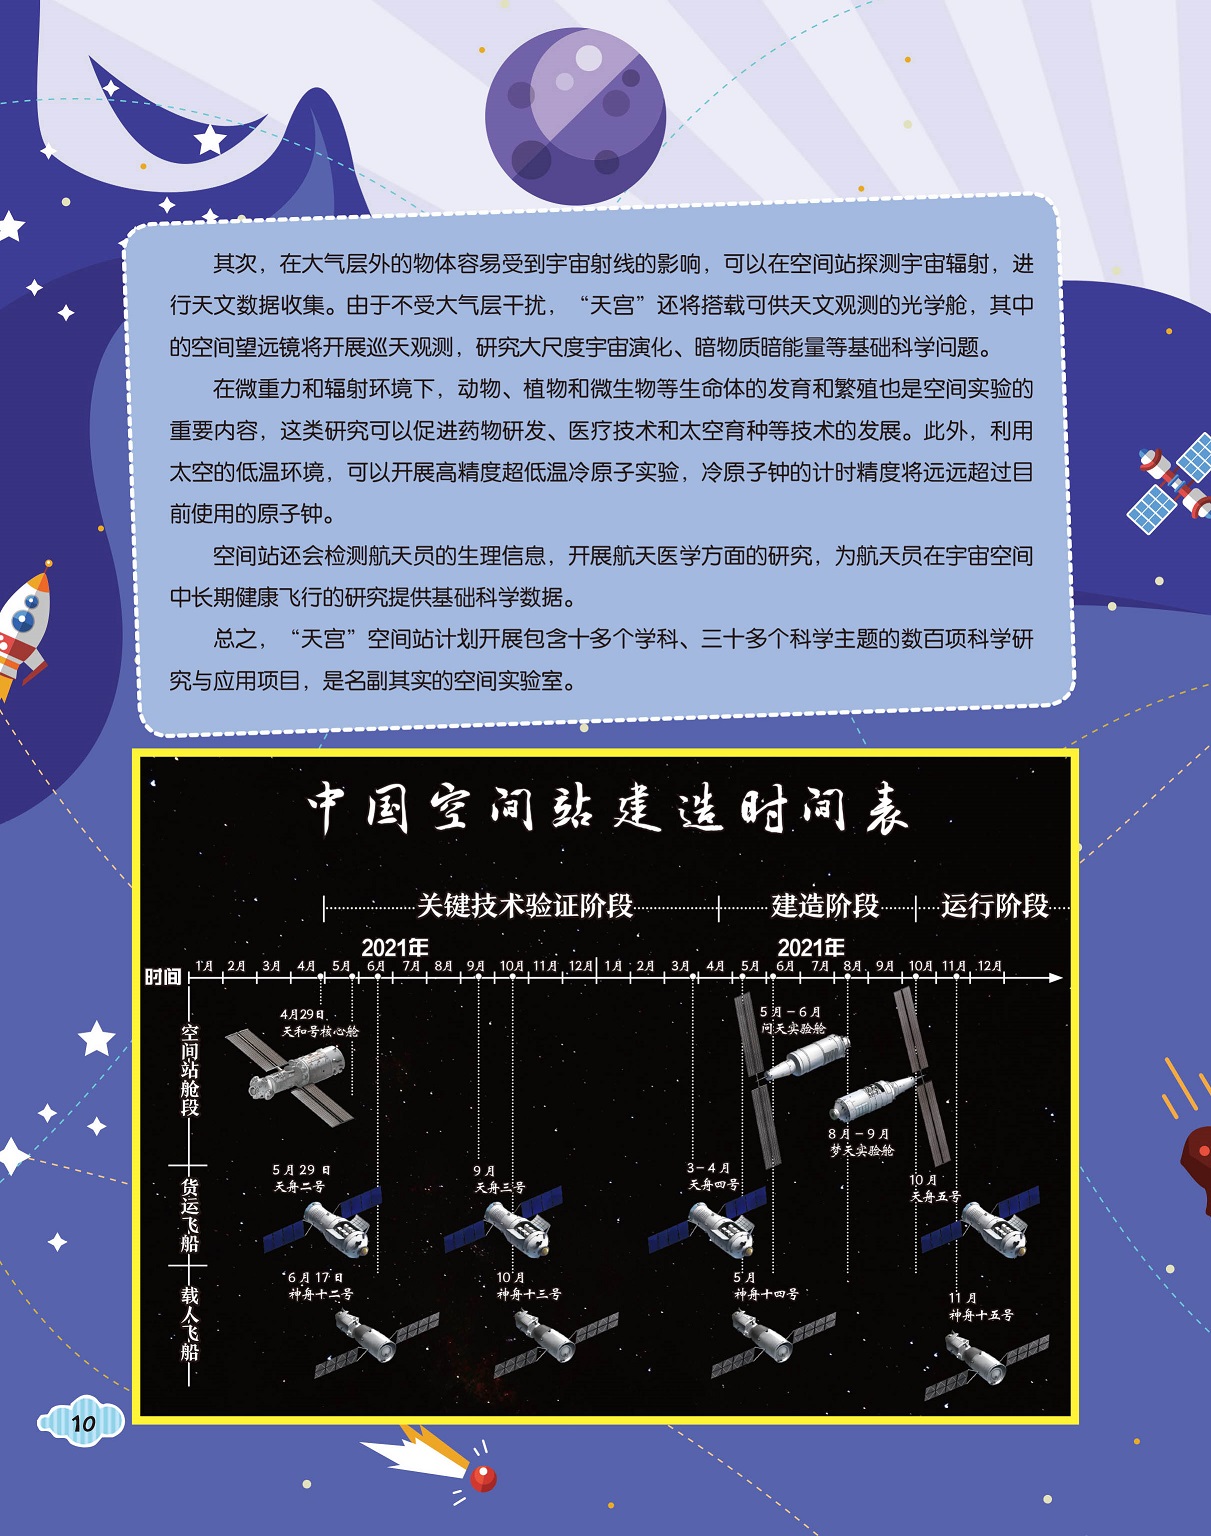 中国空间站建造时间表,空间实验的重要内容